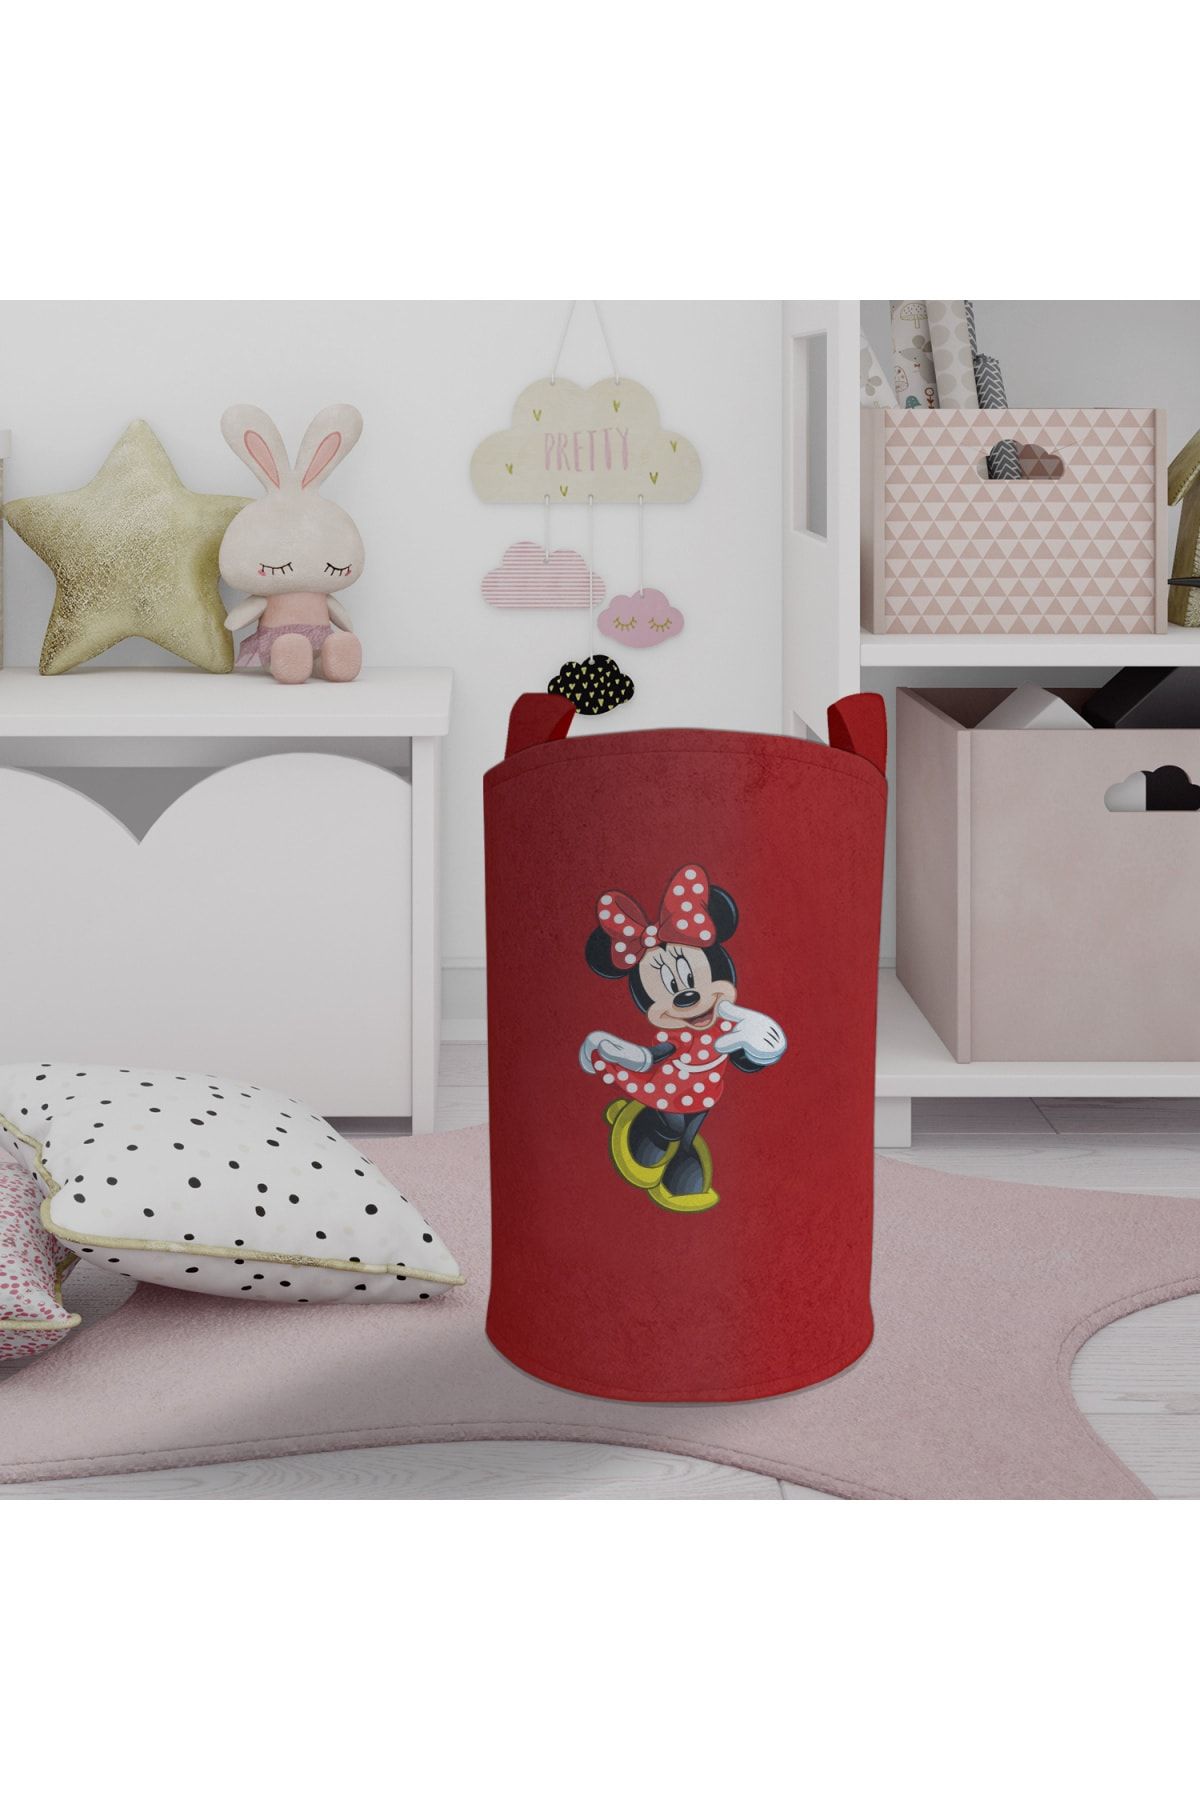 Ceritti Kırmızı Mickey Desenli Kız Bebek Ve Çocuk Odası Için Renkli Ve Uzun Saplı Çamaşır Sepeti